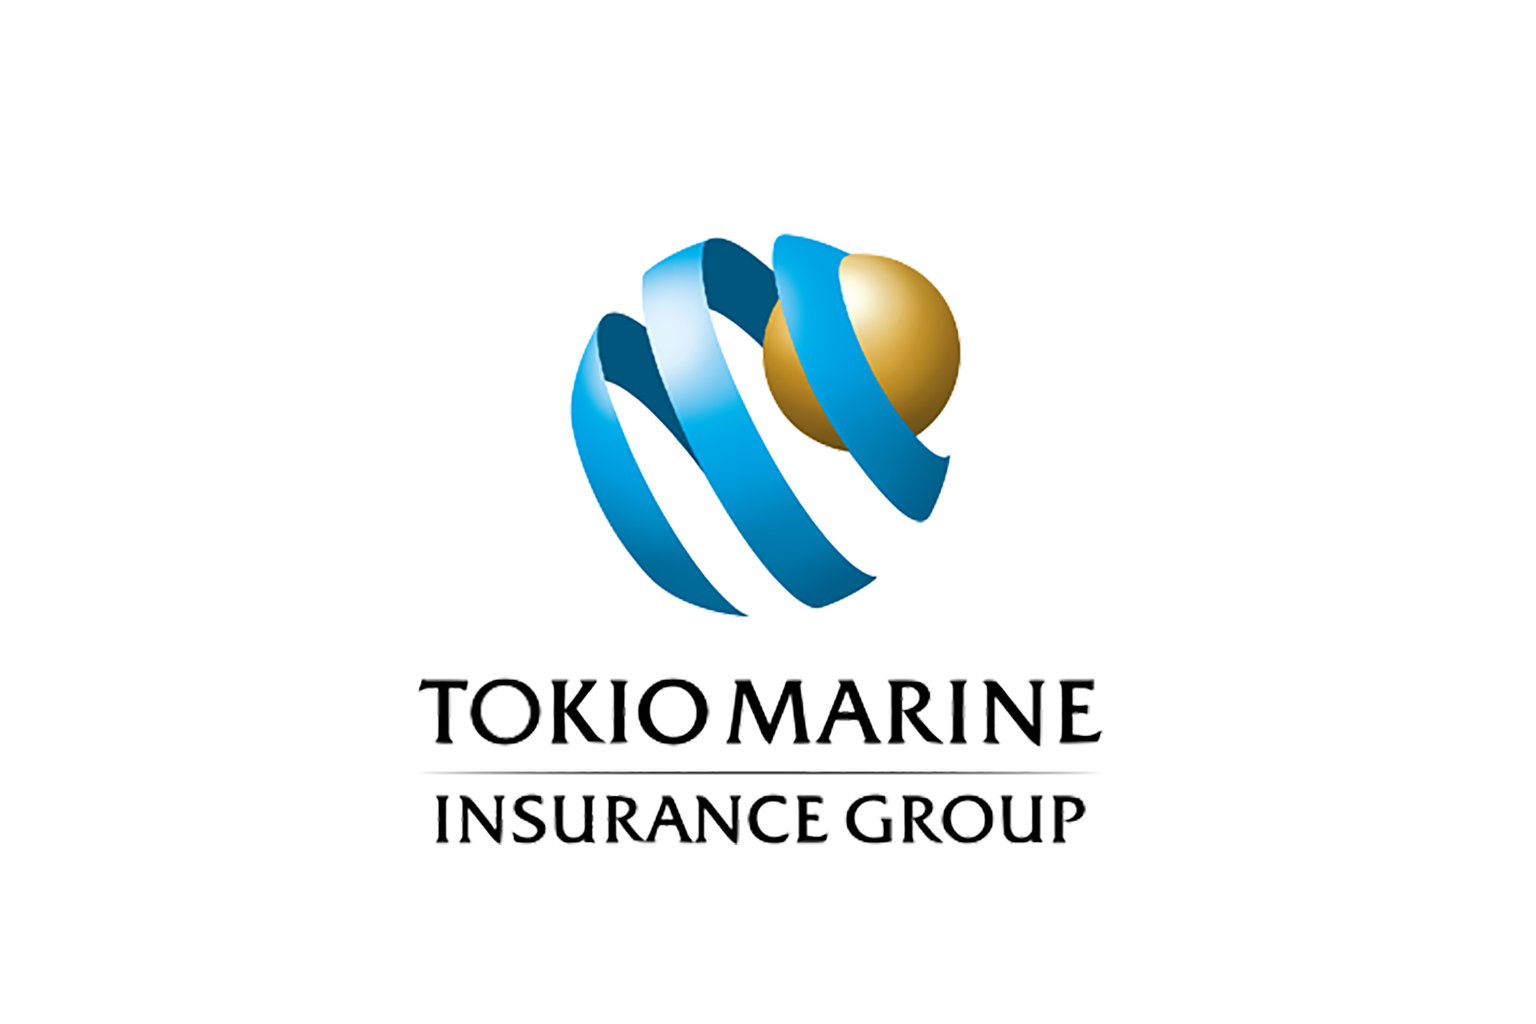 tokio marine logo